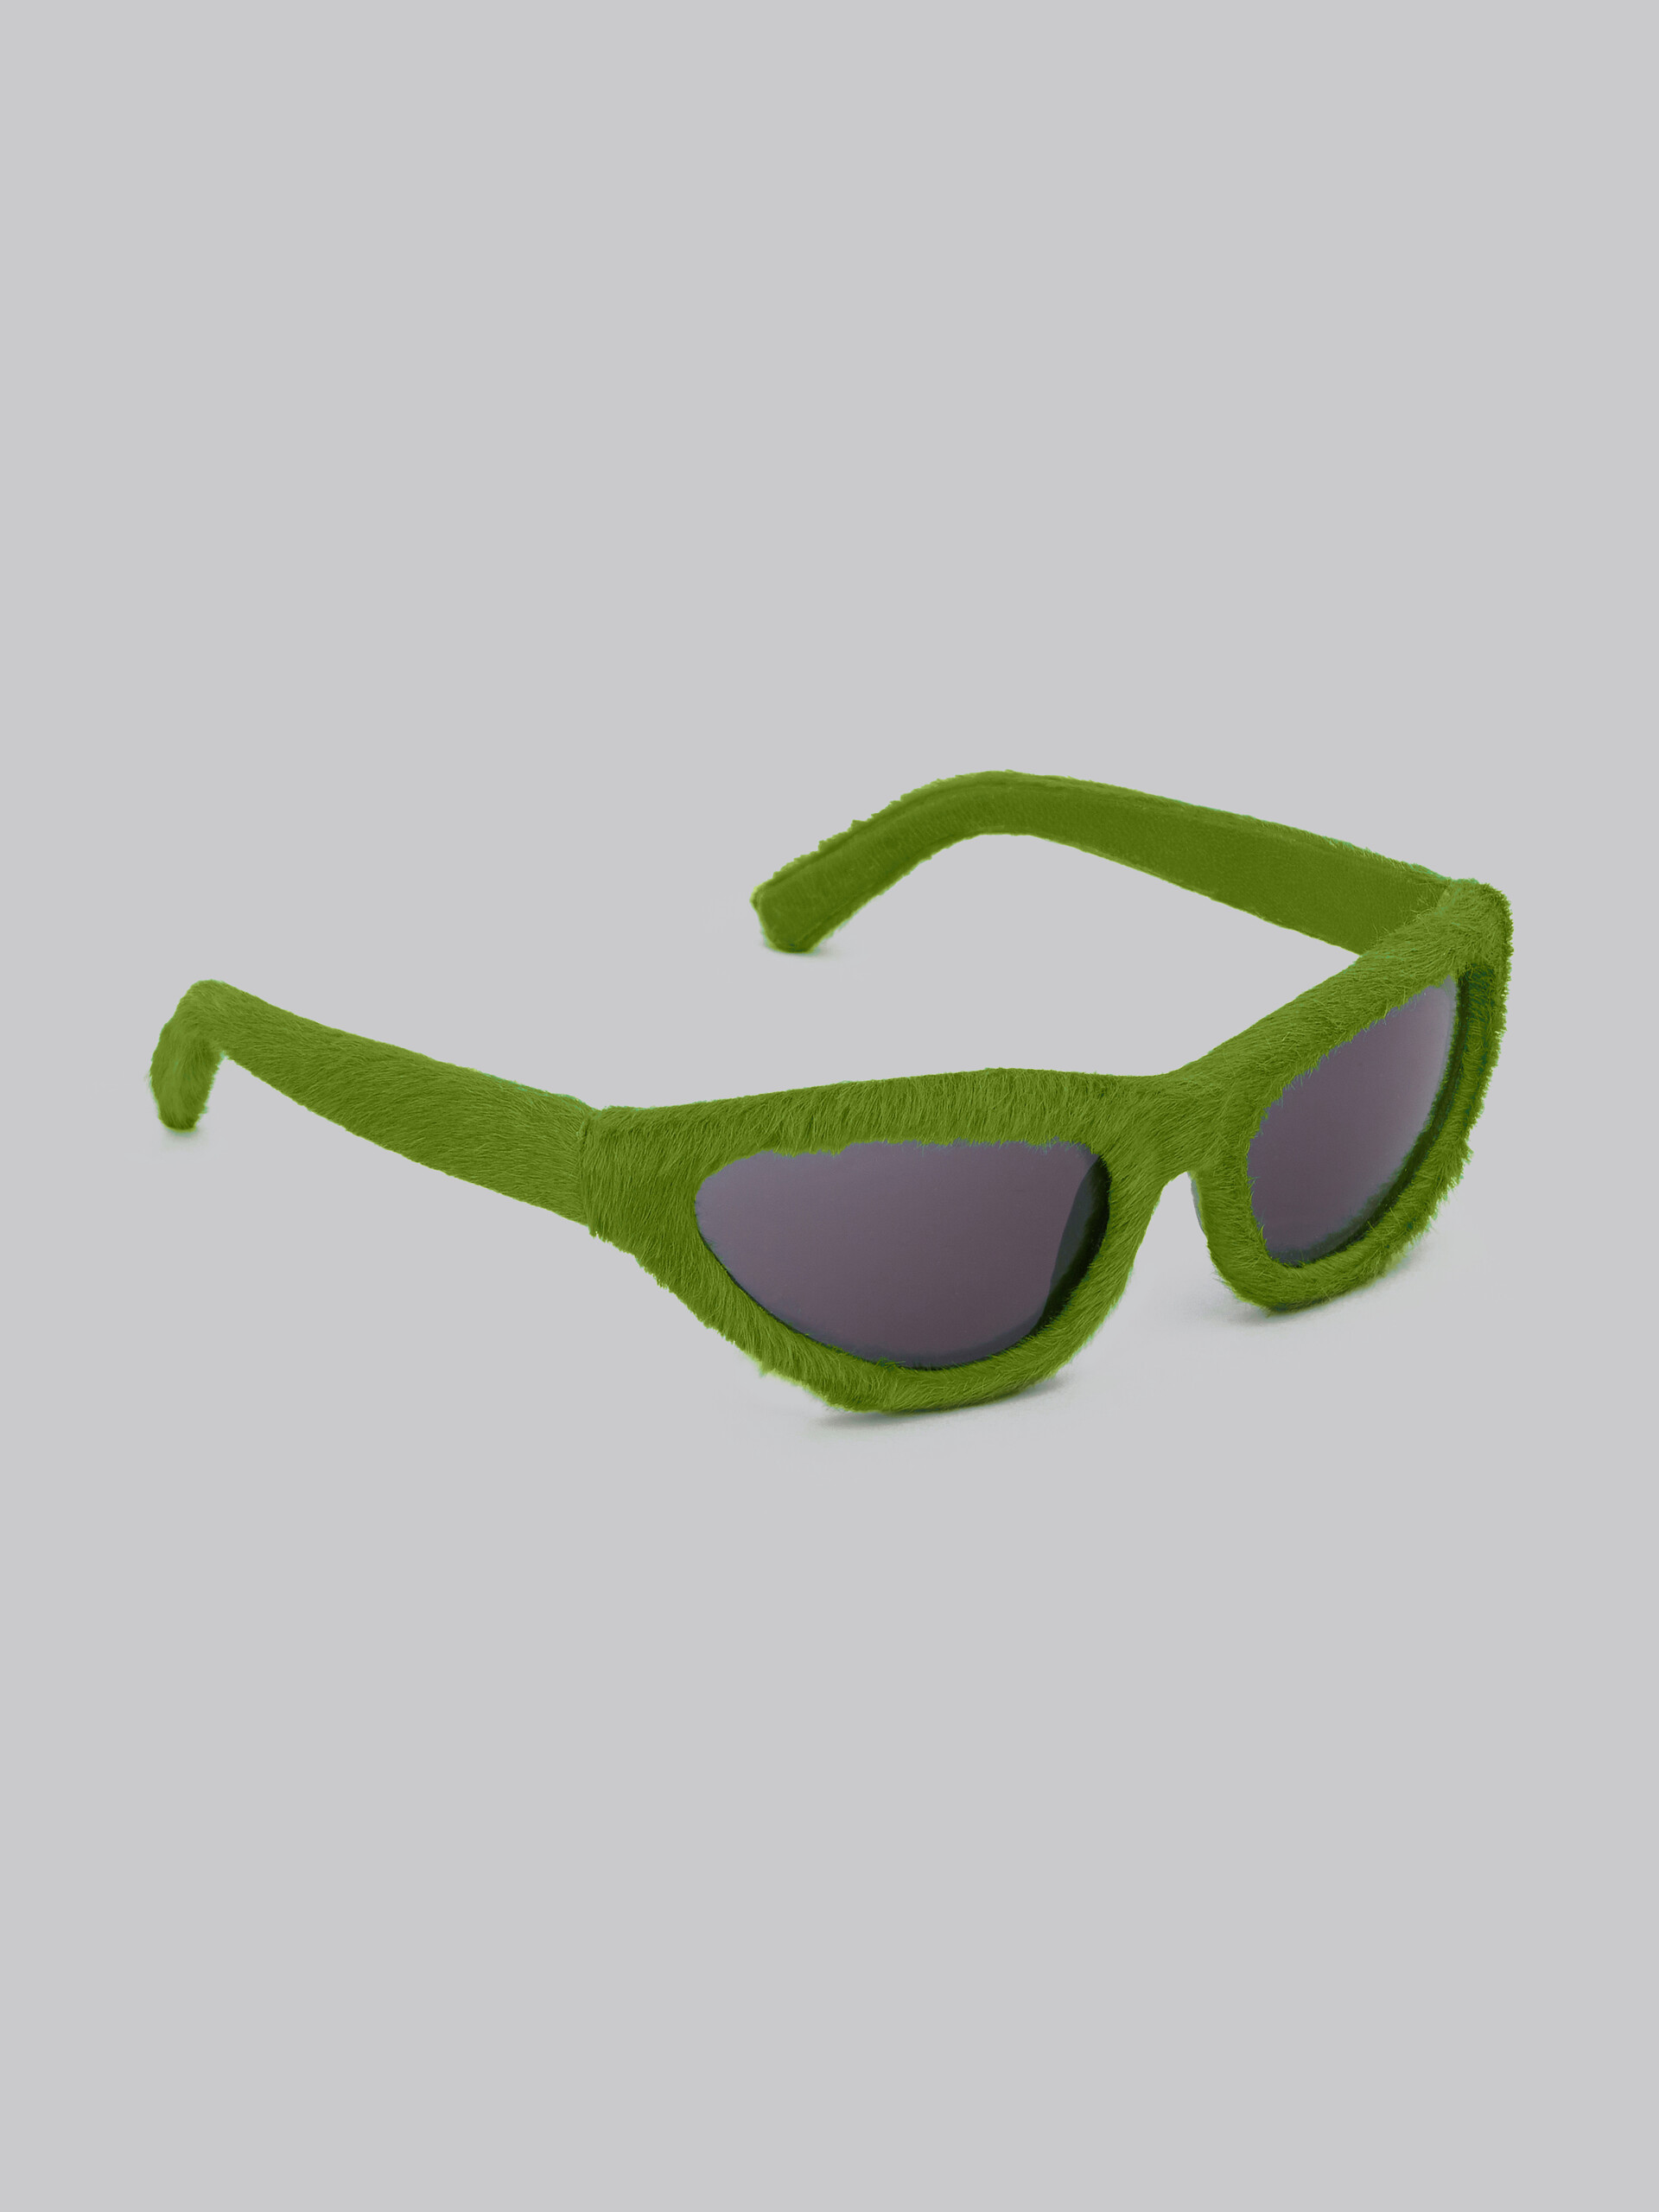 Gafas de sol verde furry Mavericks - óptica - Image 3